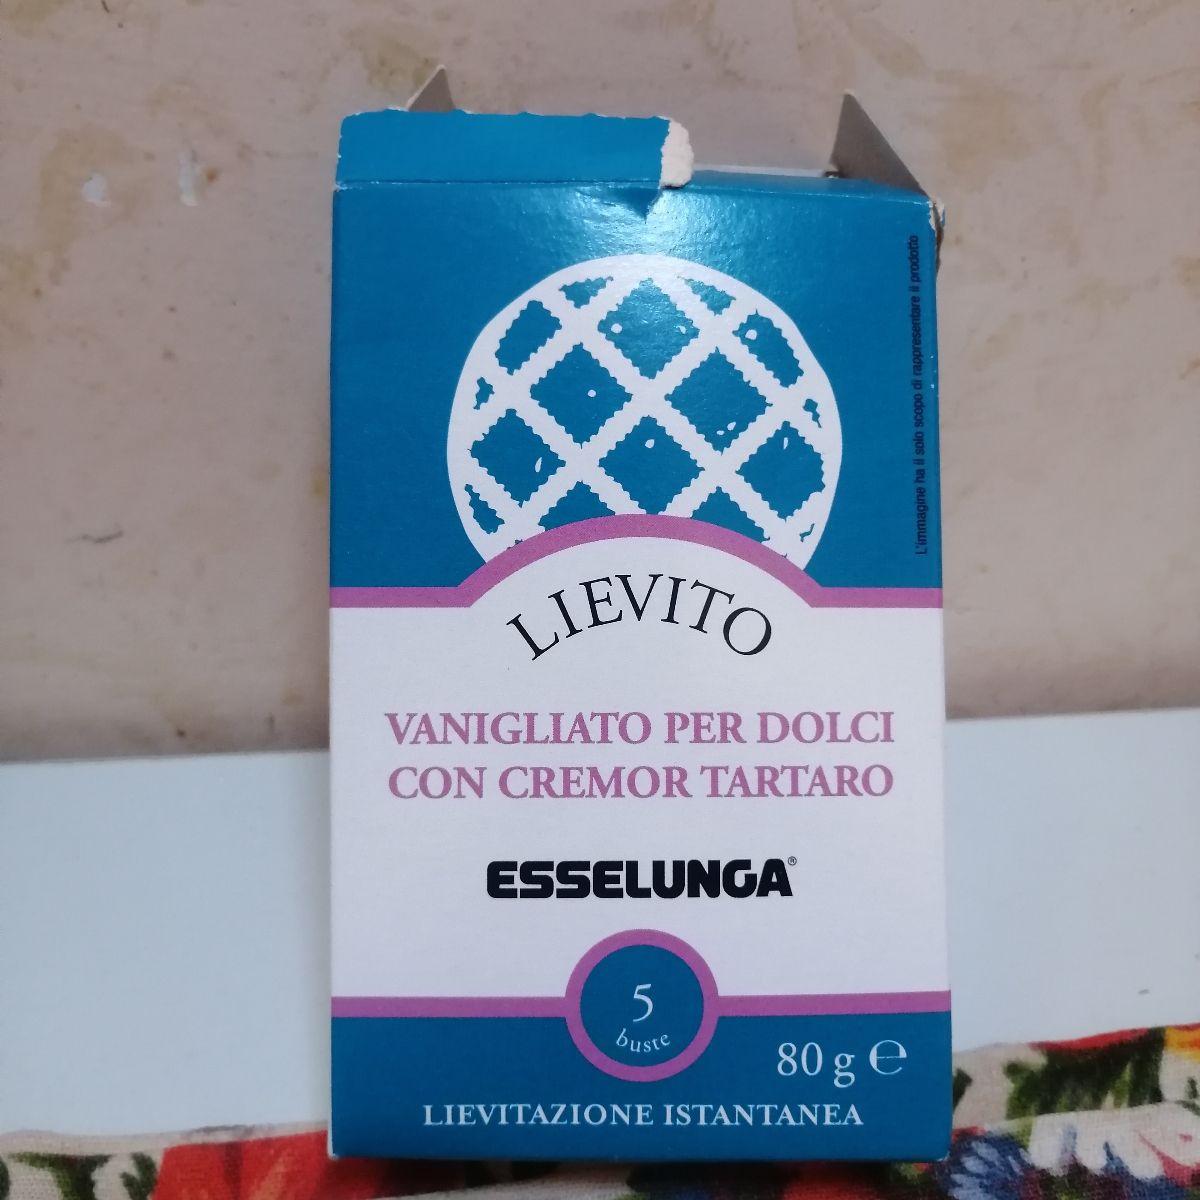 Esselunga lievito per dolci Lievito Per Dolci Con Cremor Tartaro Reviews